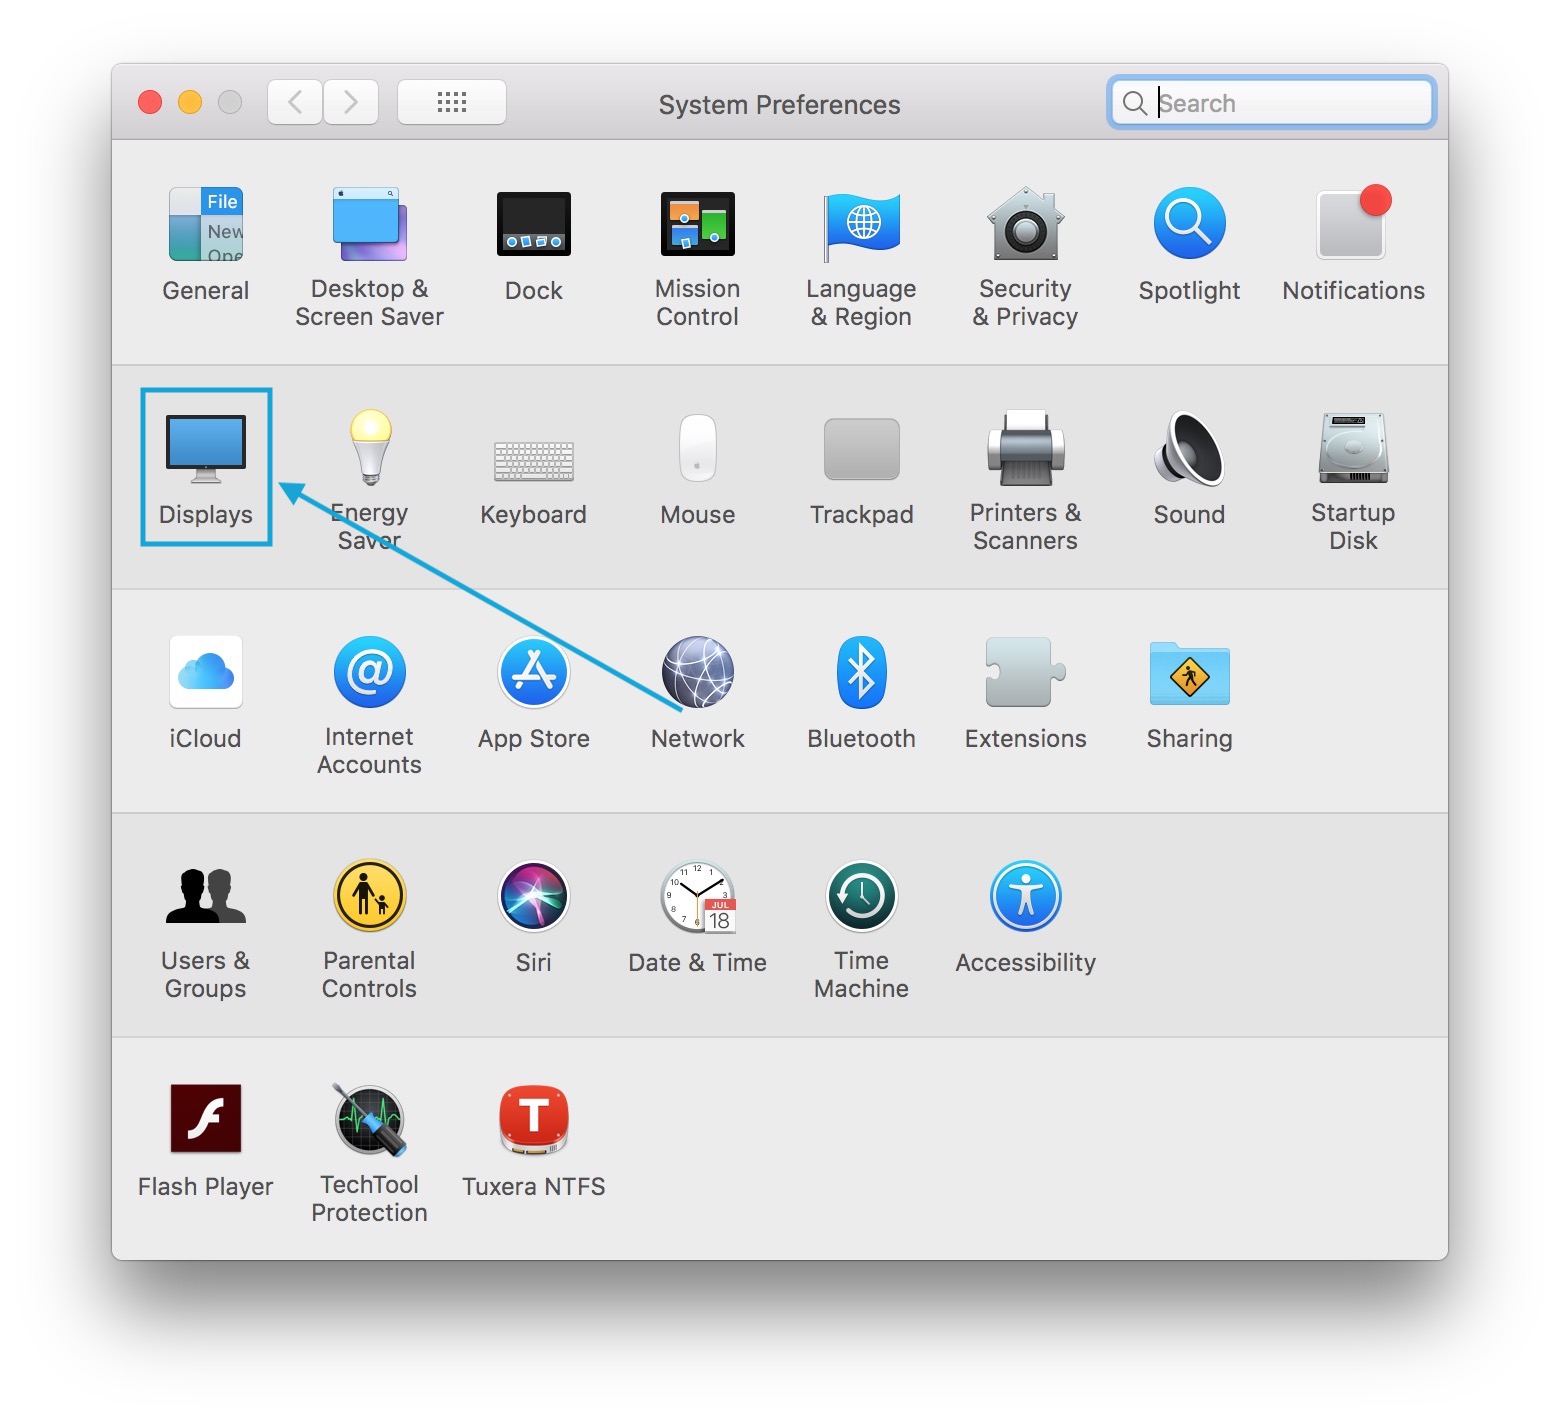 Cập nhật nâng cấp mới cho Mac năm 2024 giúp người dùng dễ dàng chỉnh kích thước màn hình Mac theo sở thích. Quảng cáo hình ảnh về tính năng mới này sẽ hấp dẫn người dùng Mac, đặc biệt là những ai thường xem phim hoặc chơi game trên chiếc máy tính này.